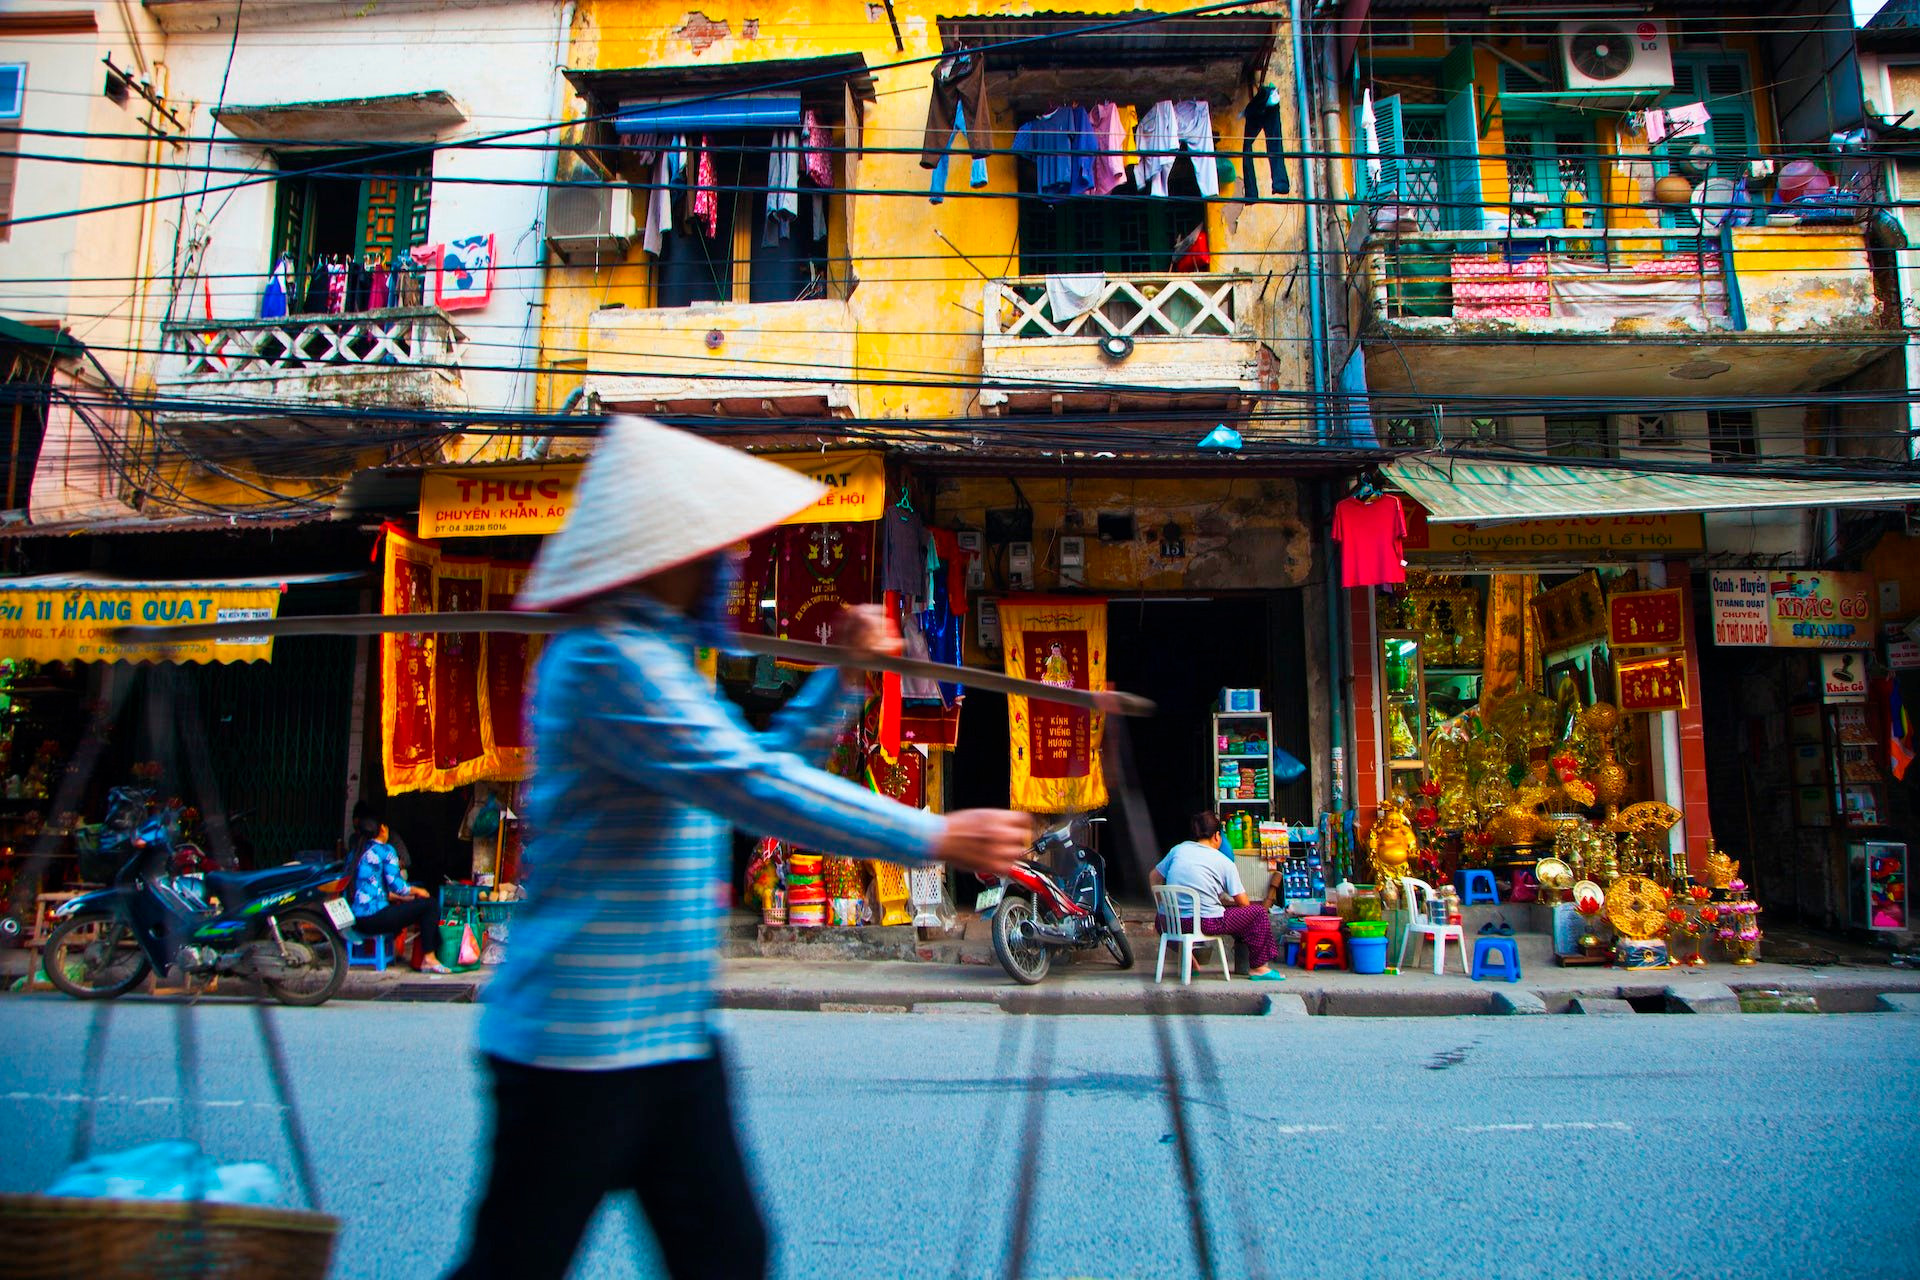 Tổ chức tín nhiệm quốc tế xếp kinh tế Việt Nam ở mức "tích cực" - Ảnh 3.